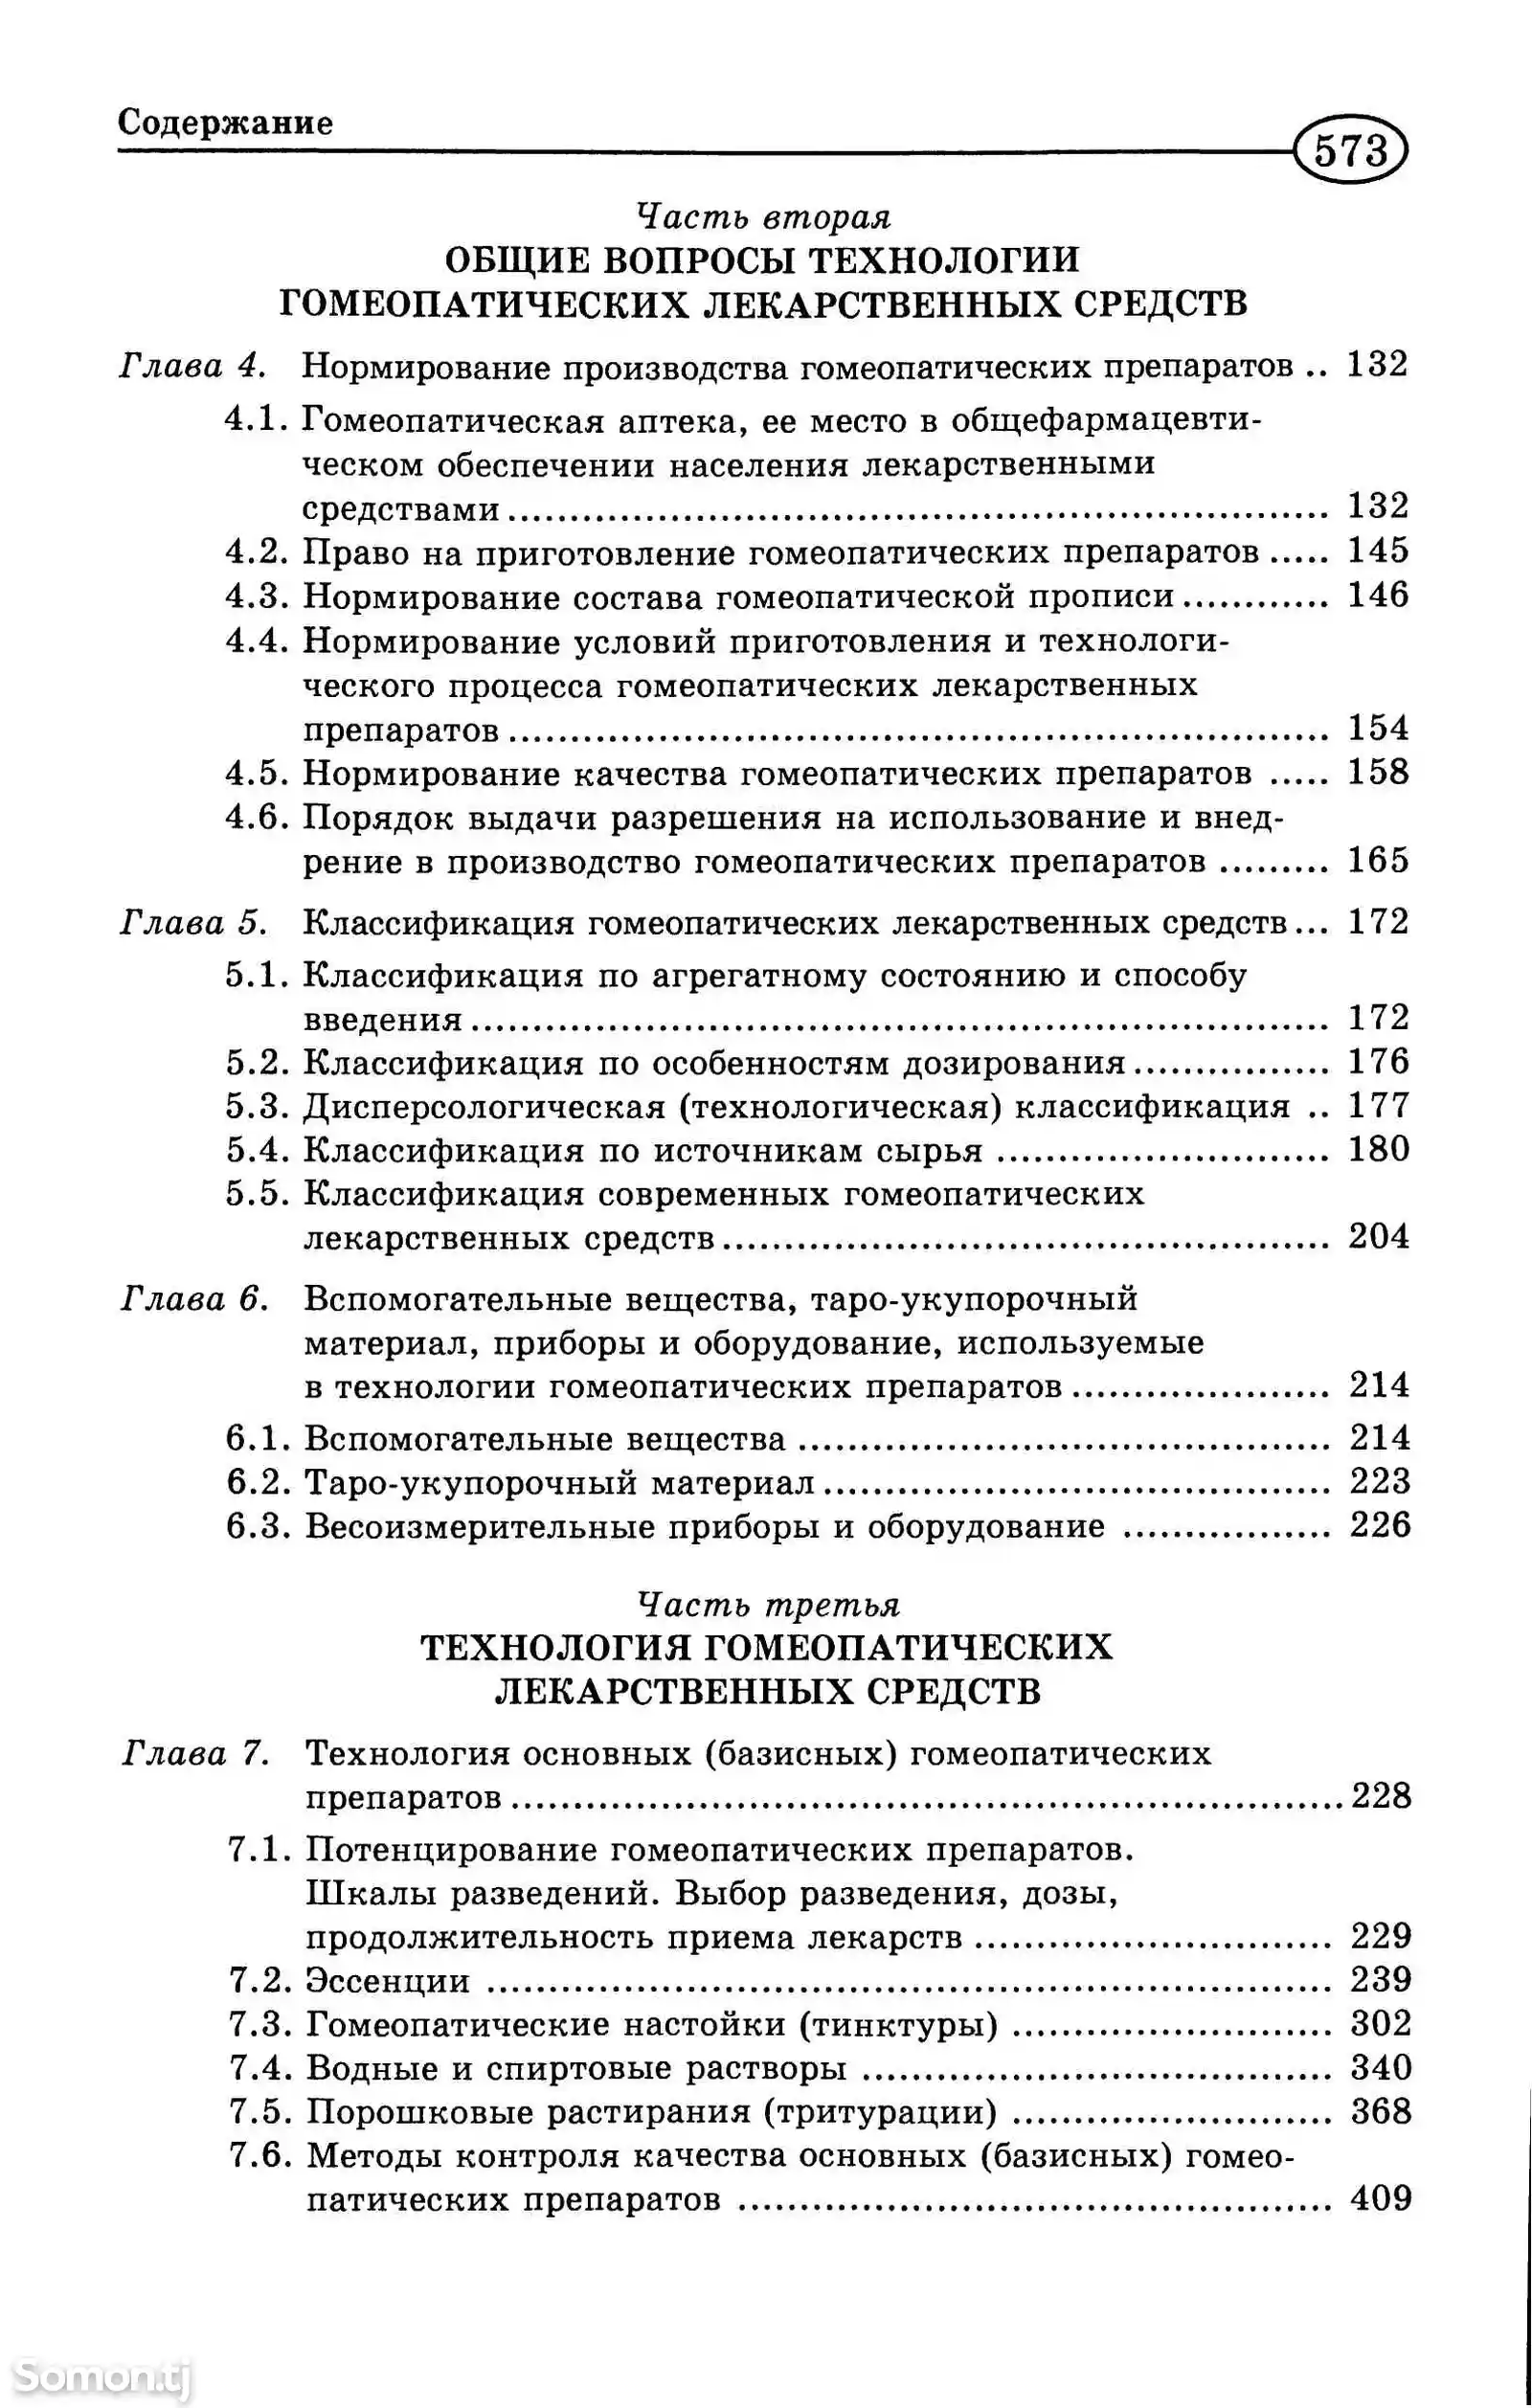 Книга - Основы Гомеопатической фармации-3